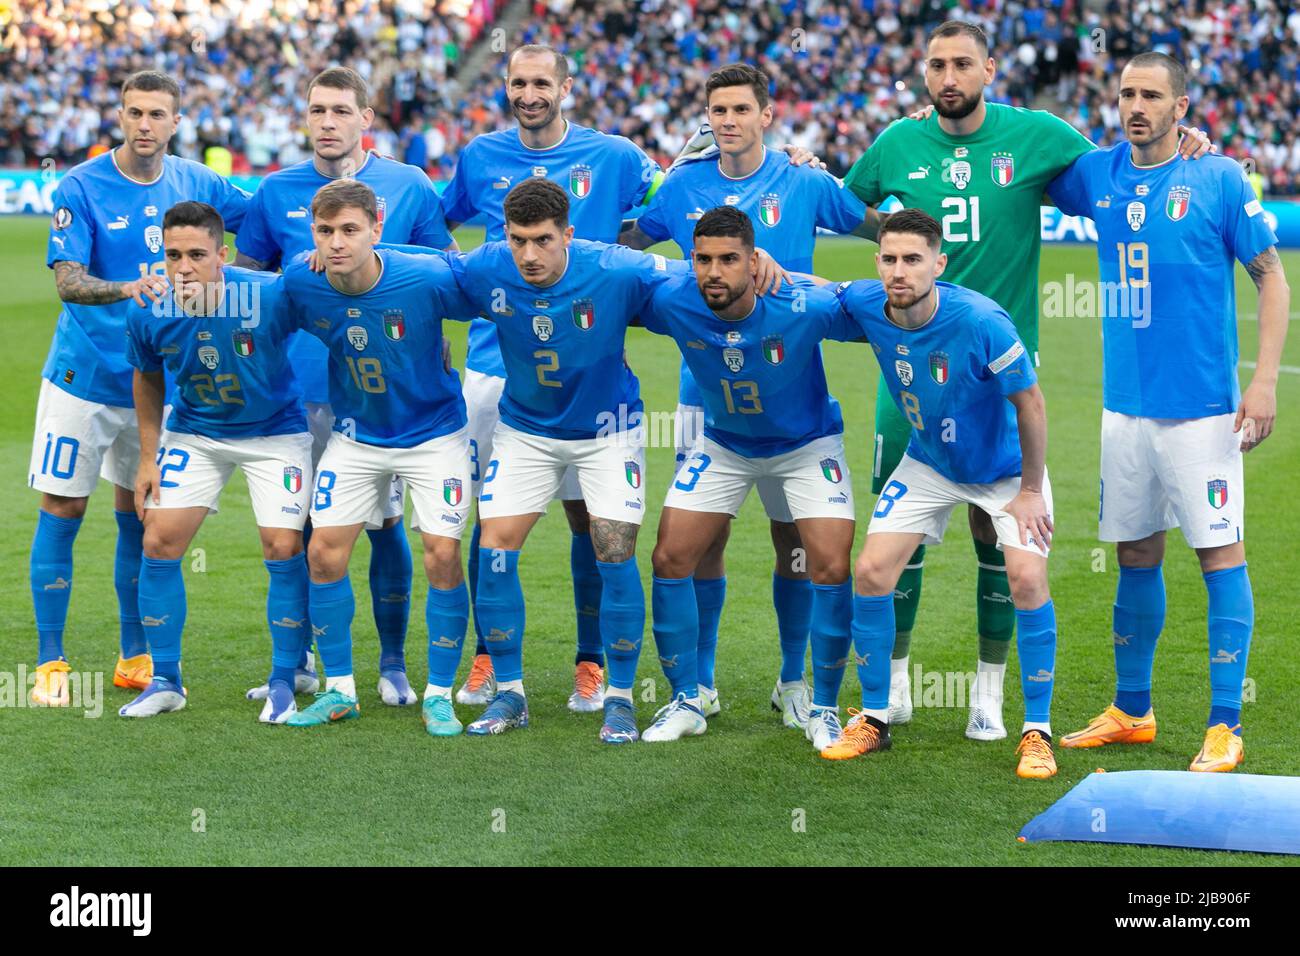 Joueurs sur l'Italie avant l'Italie contre l'Argentine - Finalissima 2022 match au stade Wembley sur 1 juin 2022 à Londres, Angleterre.(MB Media) Banque D'Images